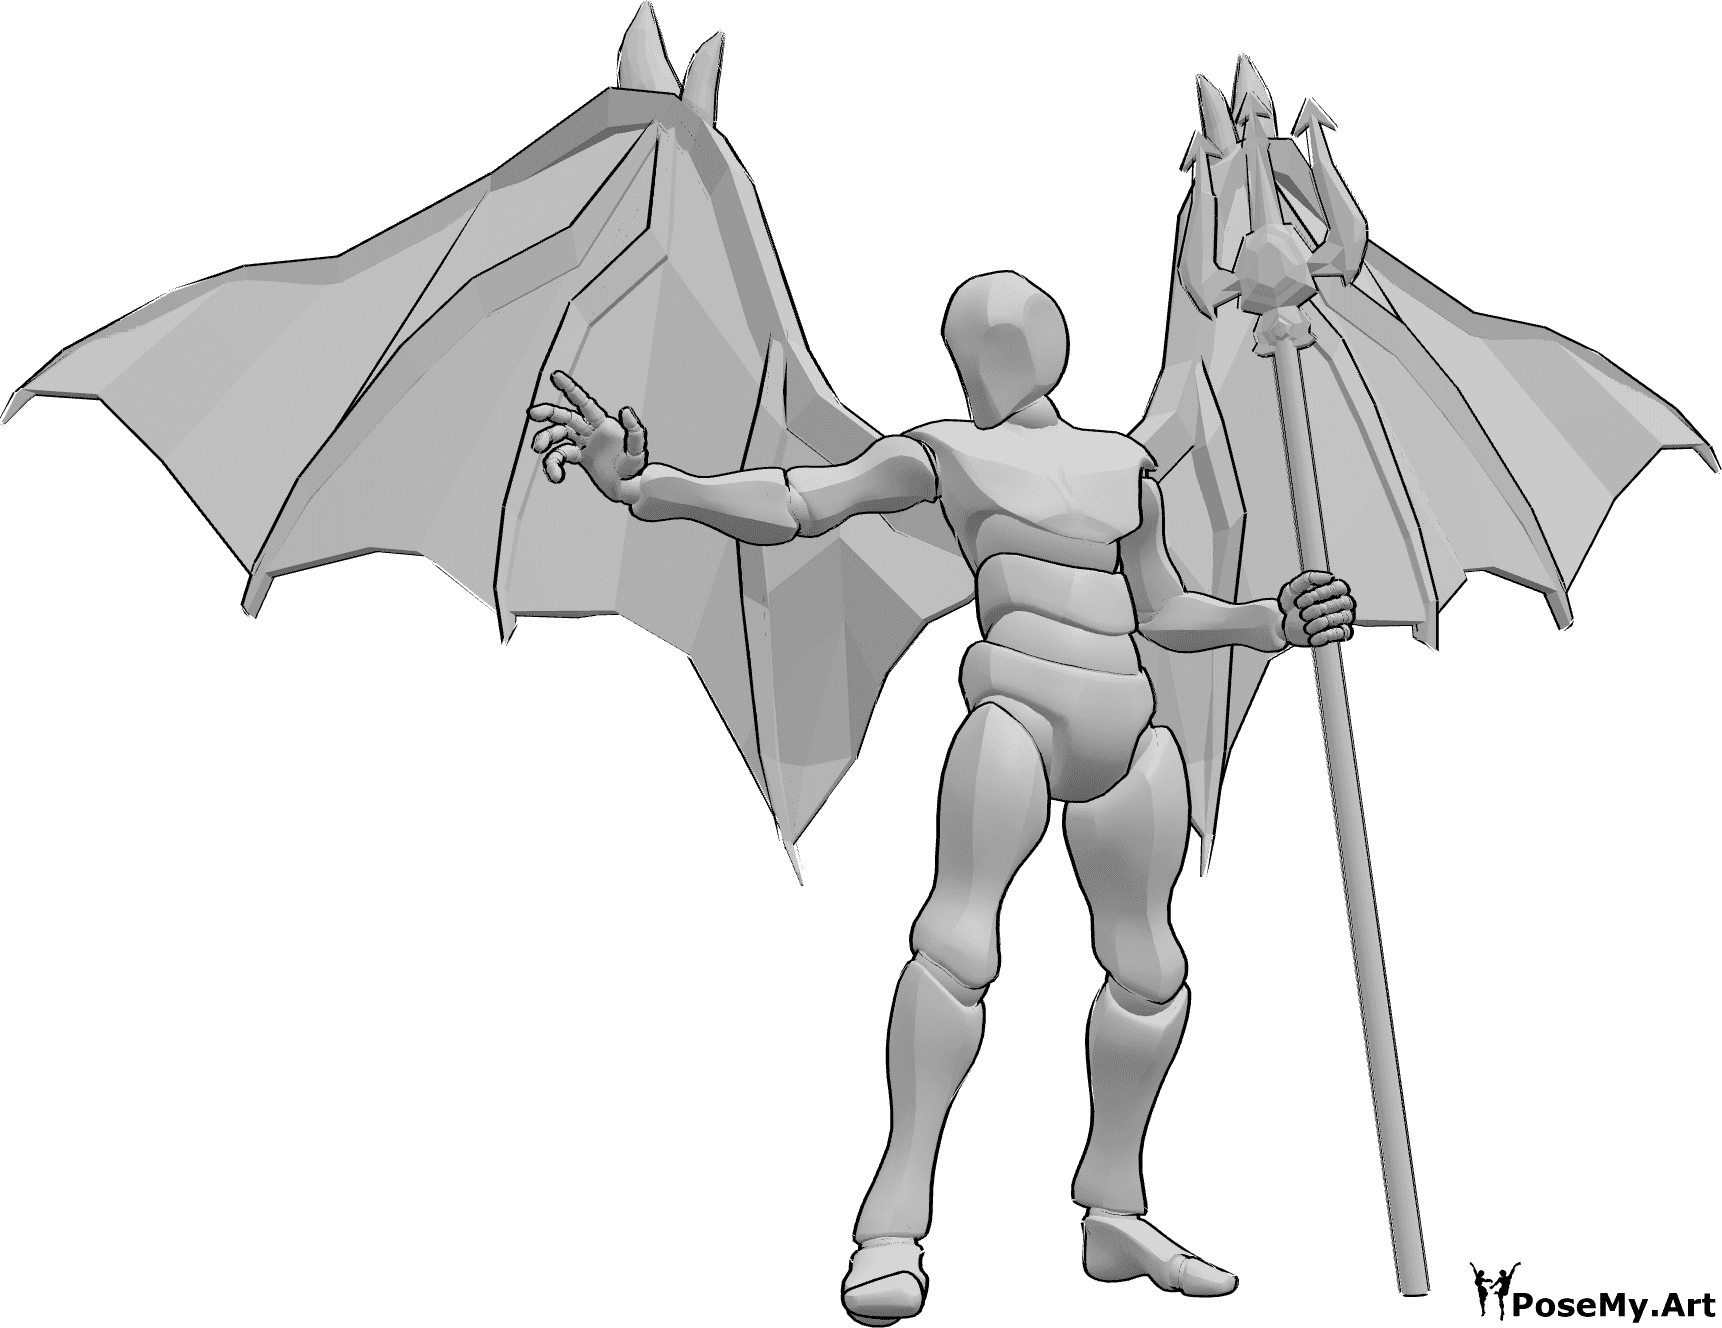 Referencia de poses- Pose para lanzar hechizos demoníacos - Hombre con alas de diablo de pie, sosteniendo un tridente en la mano izquierda y lanzando un hechizo con la mano derecha.